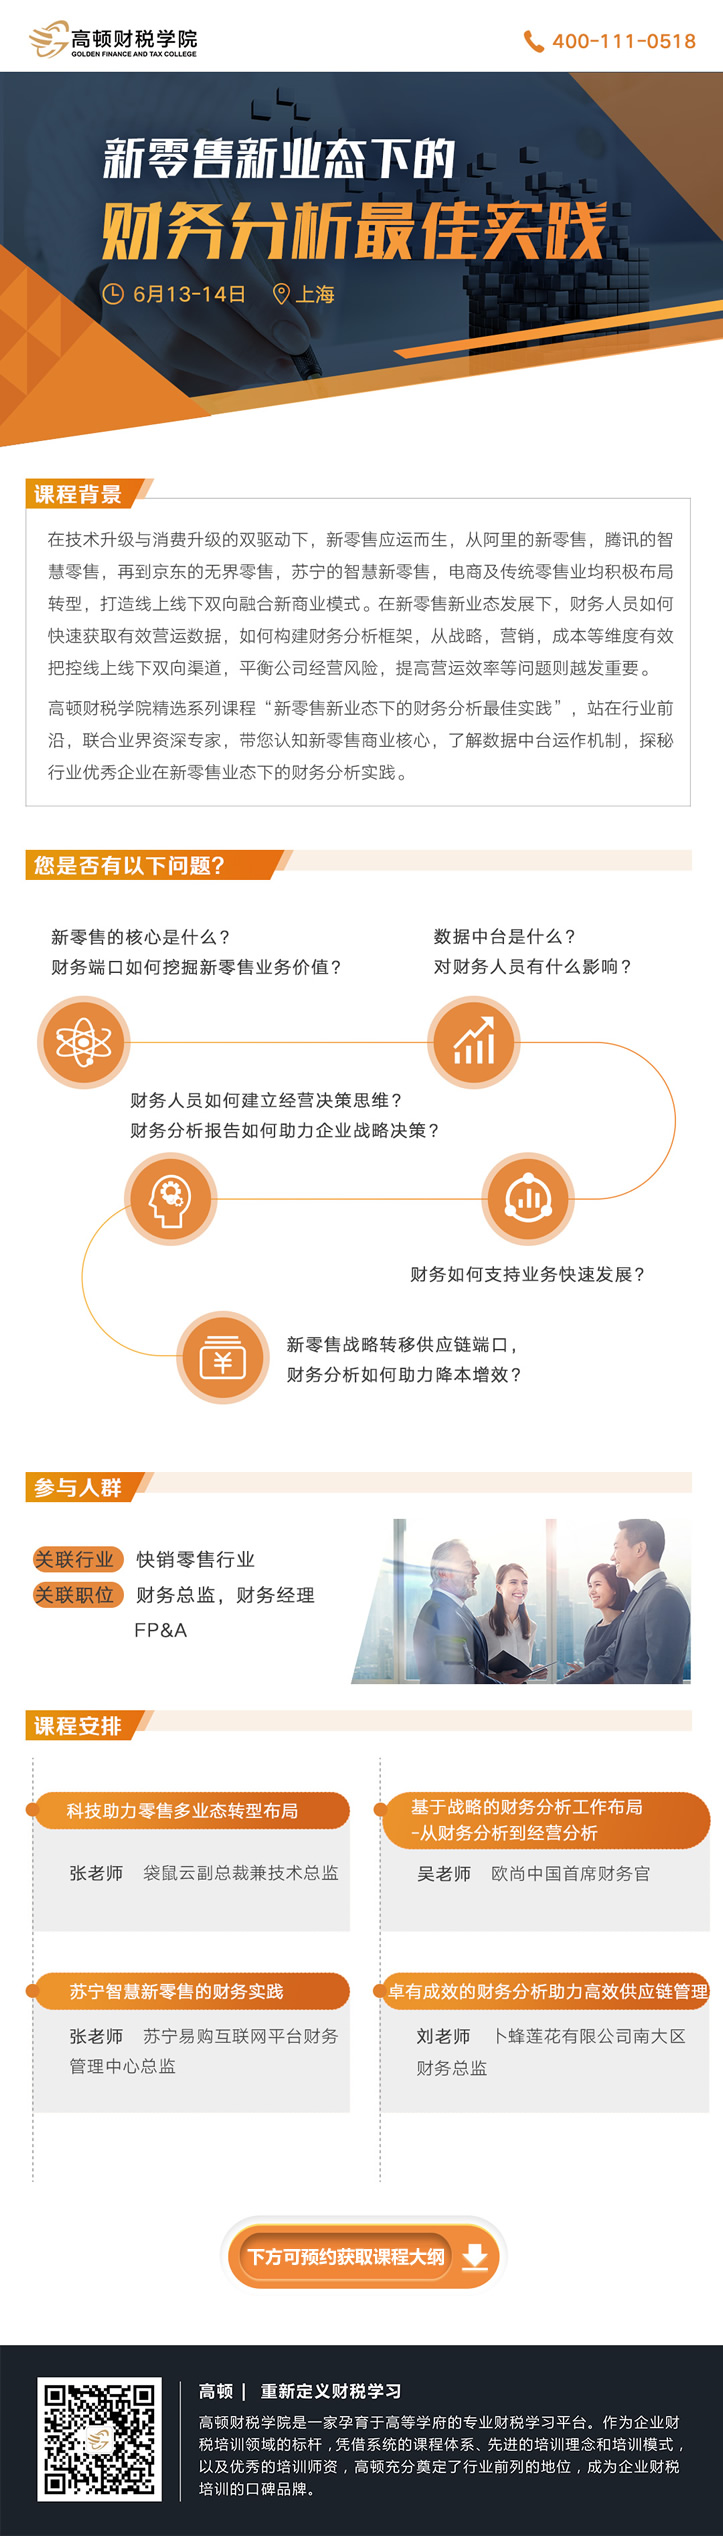 新零售新业态下的财务分析最佳实践开课筹备中，将于2019年6月22日在上海开课